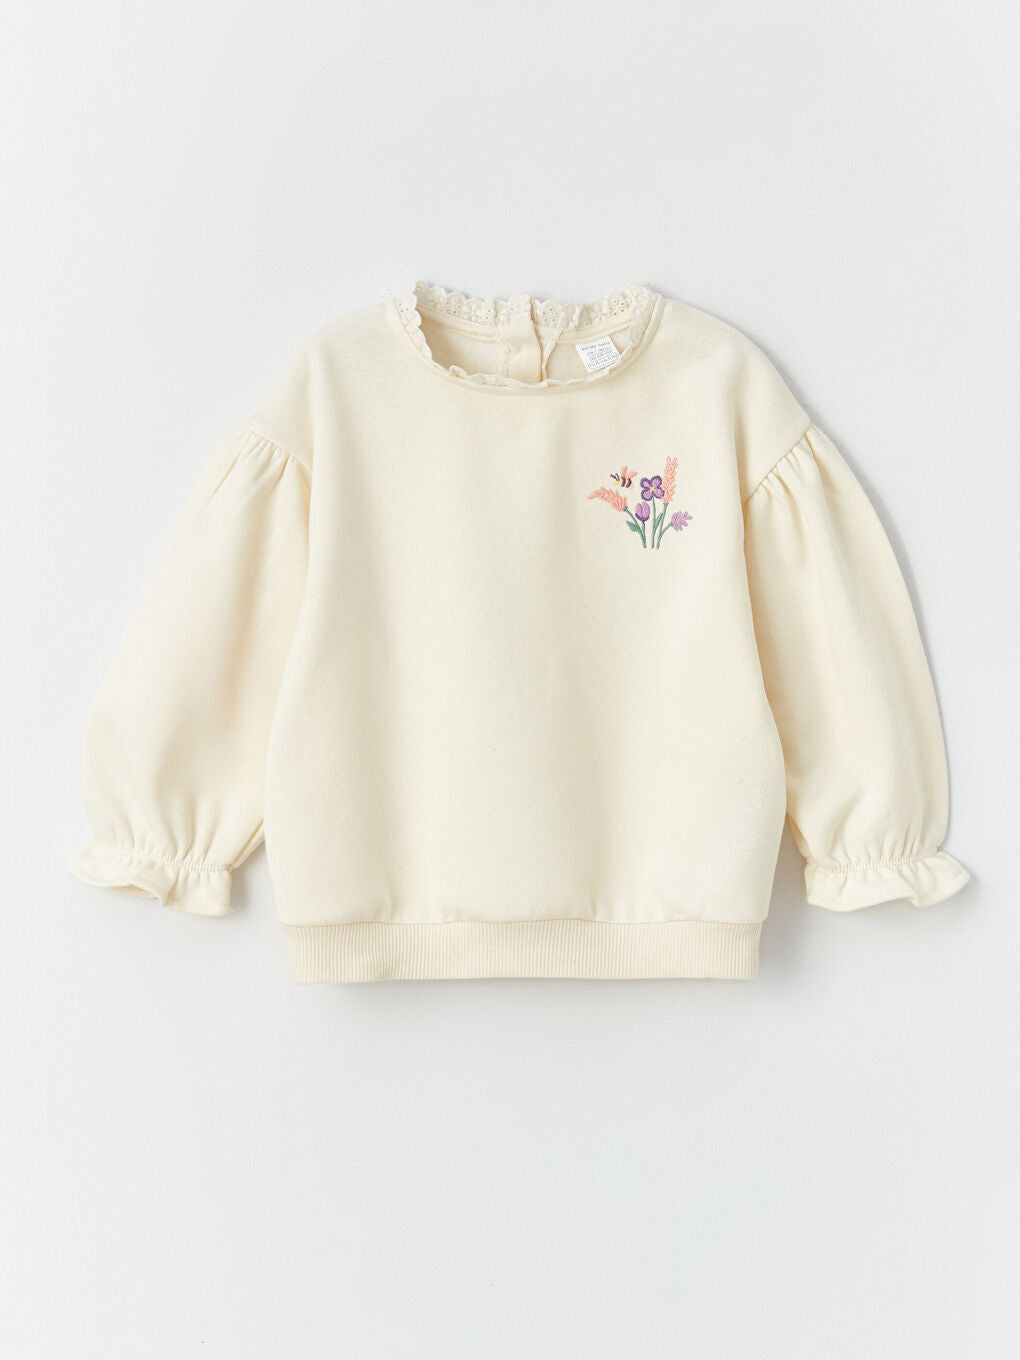 Crew Neck Long Sleeve Embroidered Baby Girl Sweatshirt